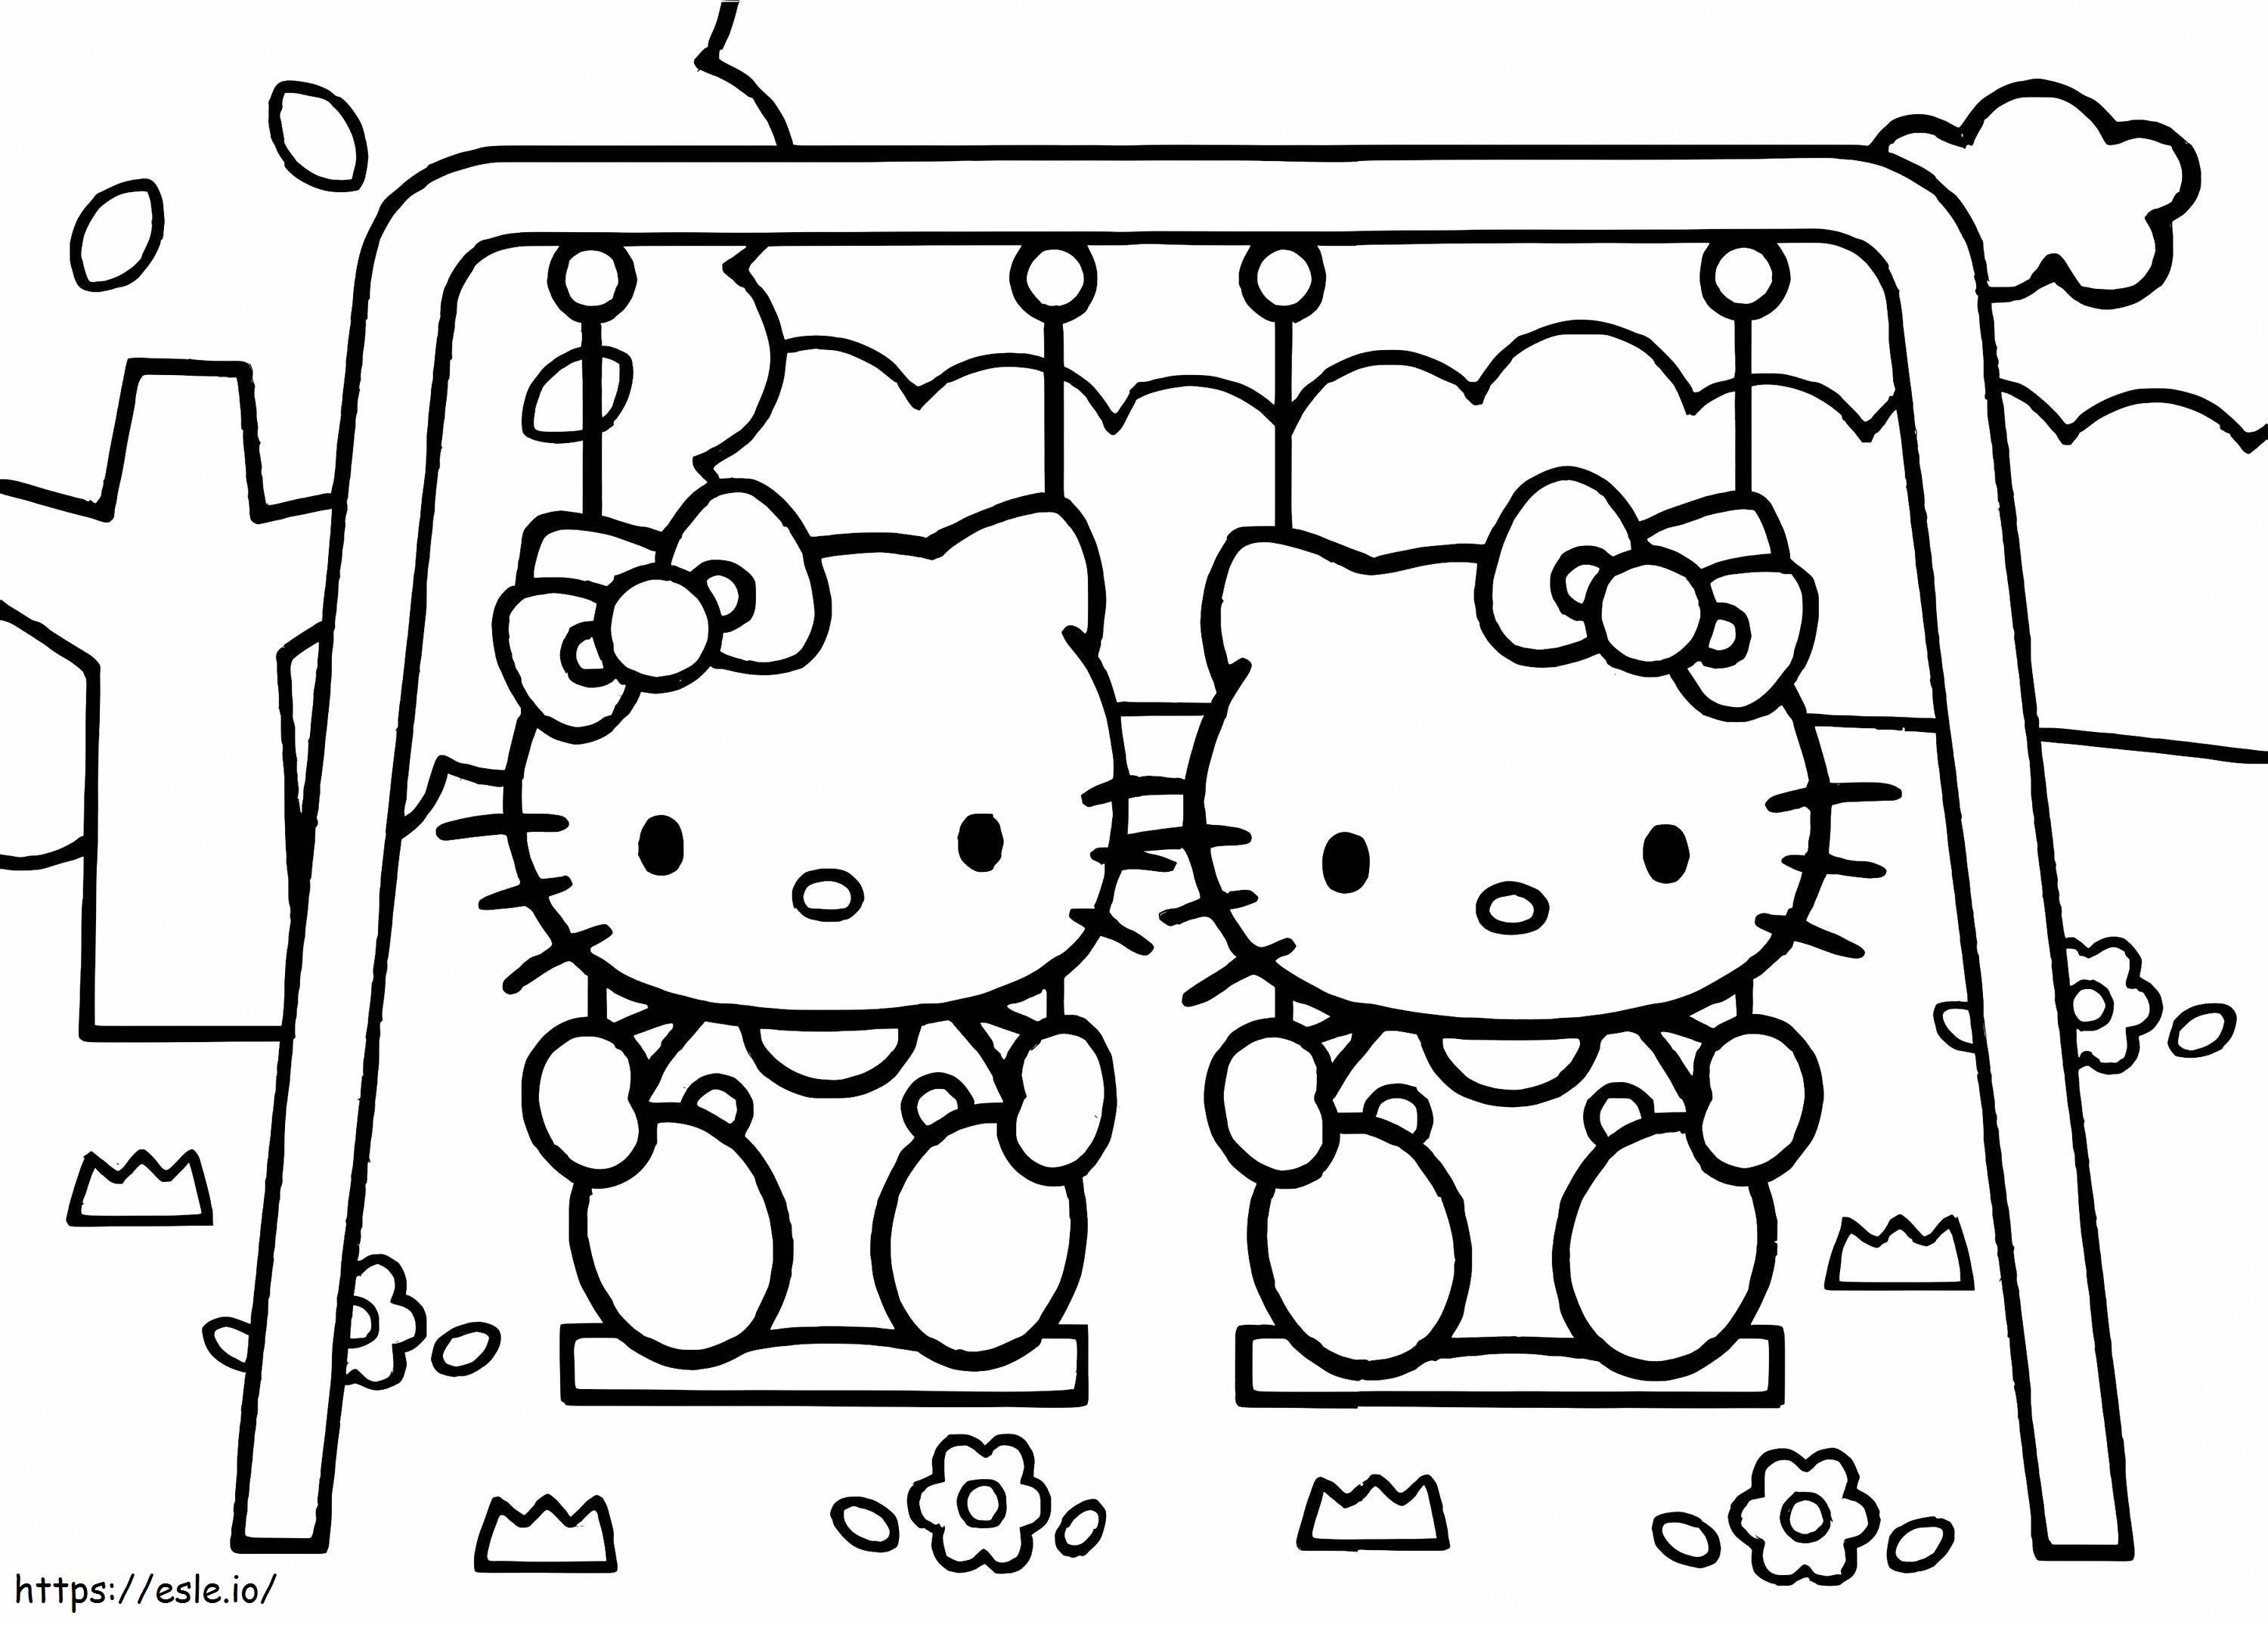 Coloriage Bébé Hello Kitty joue sur les balançoires à imprimer dessin